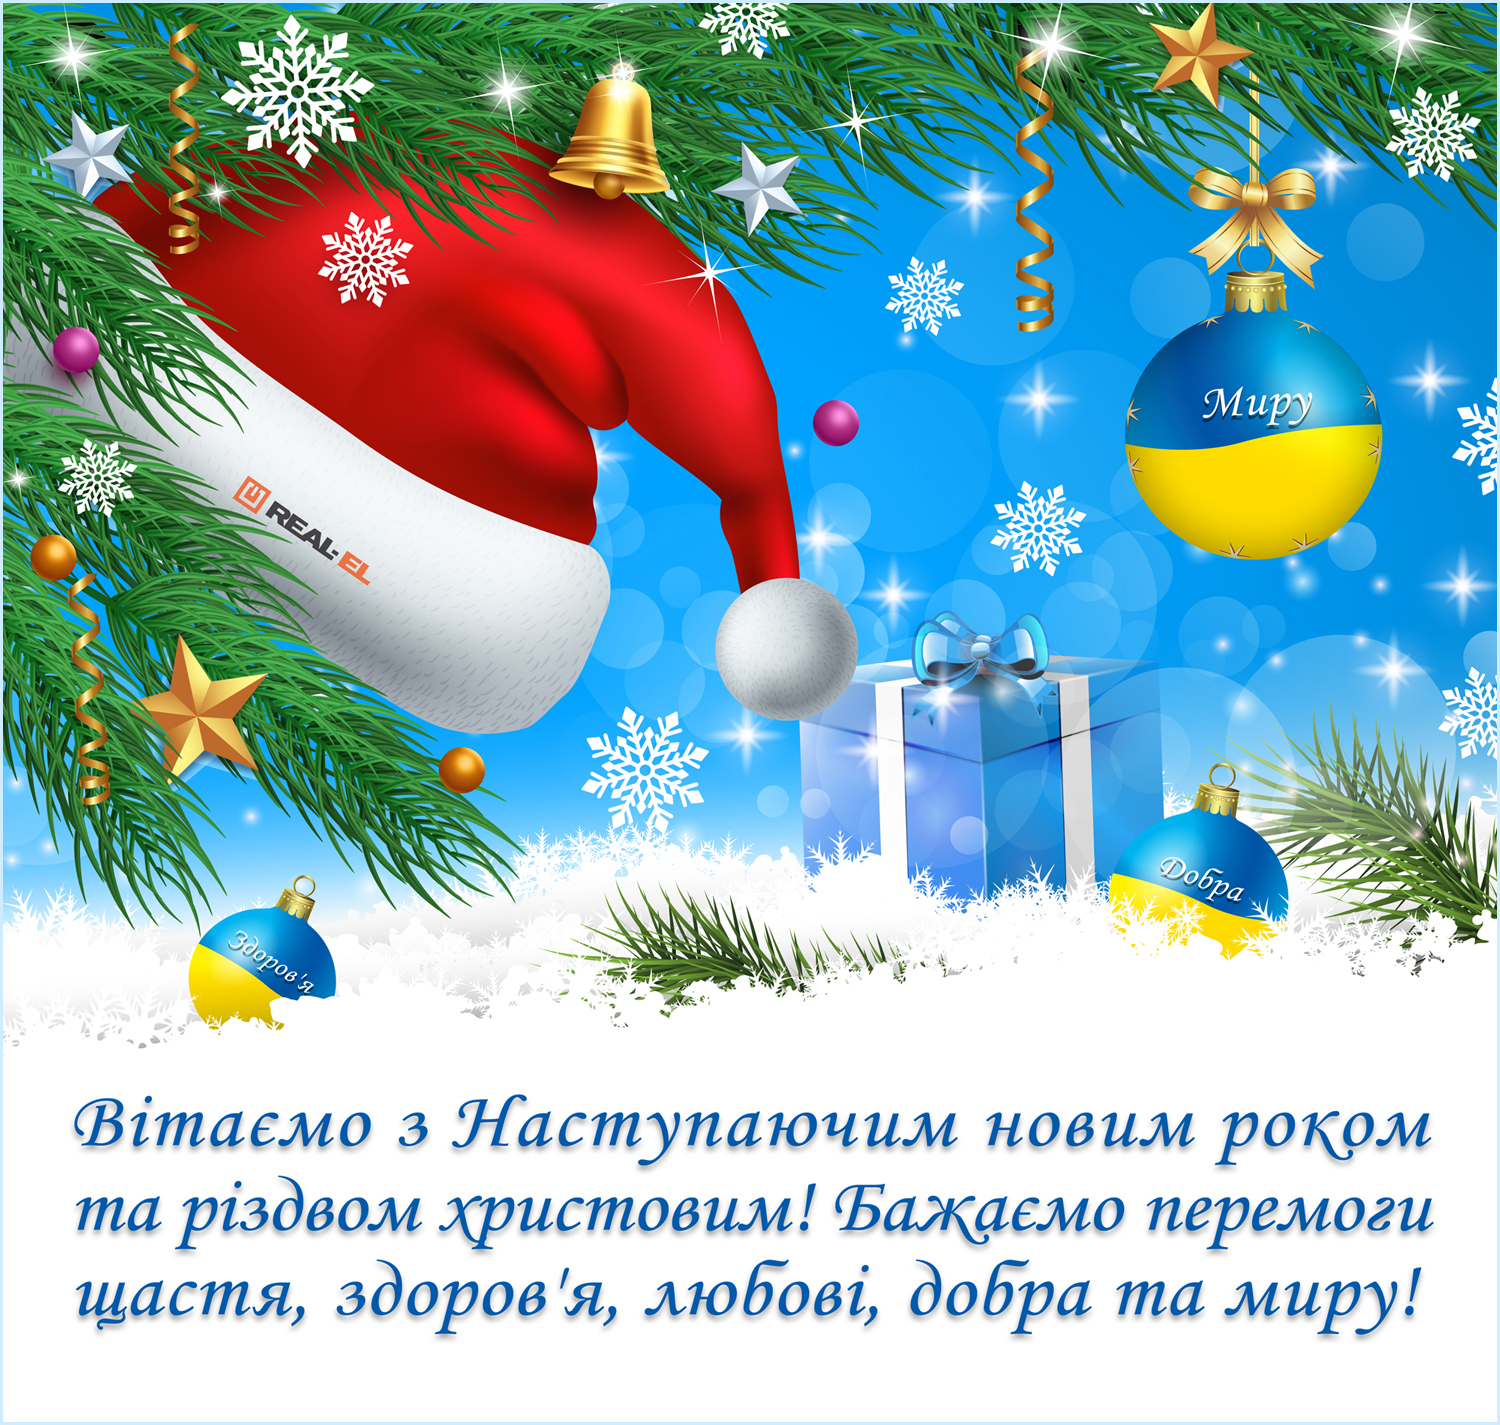 Вітаємо з наступаючим Новим роком та Різдвом Христовим!